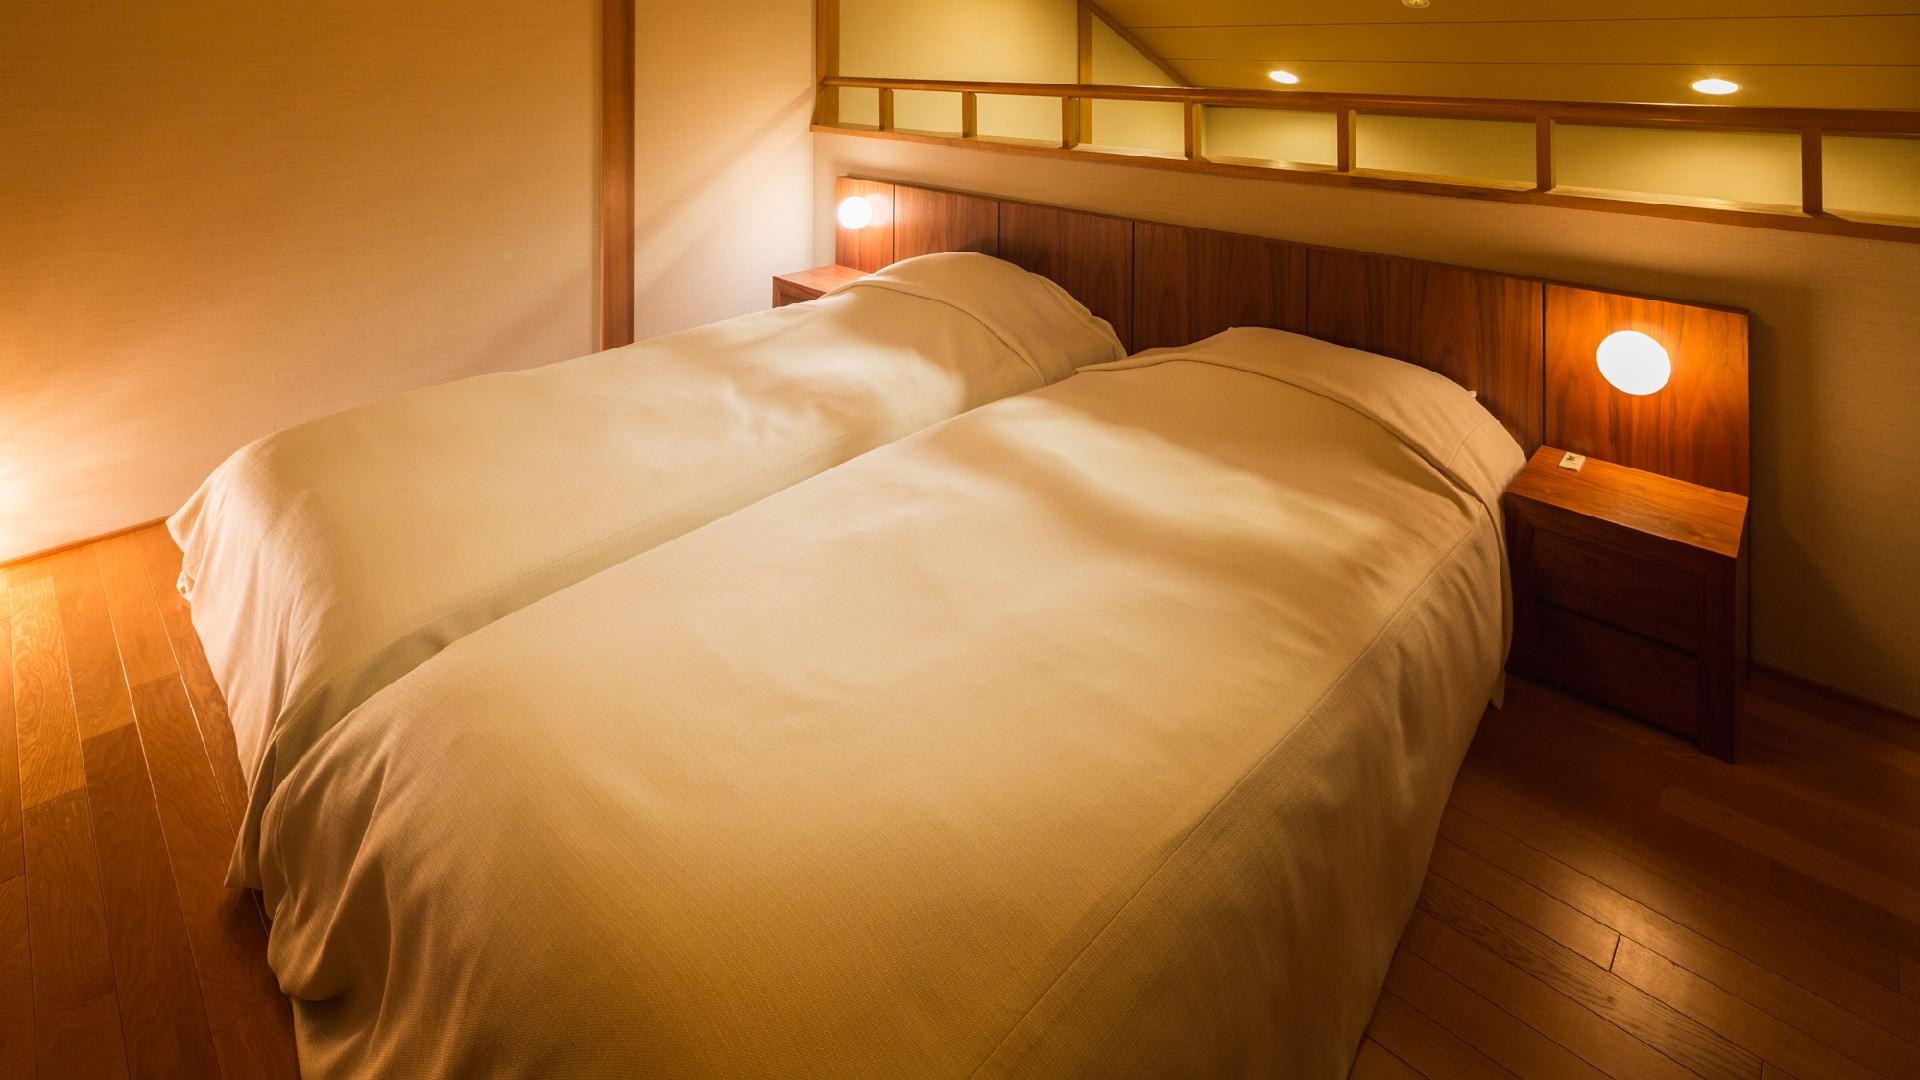 【일본식 방】2층 침실은 9.72평미의 넓은 공간